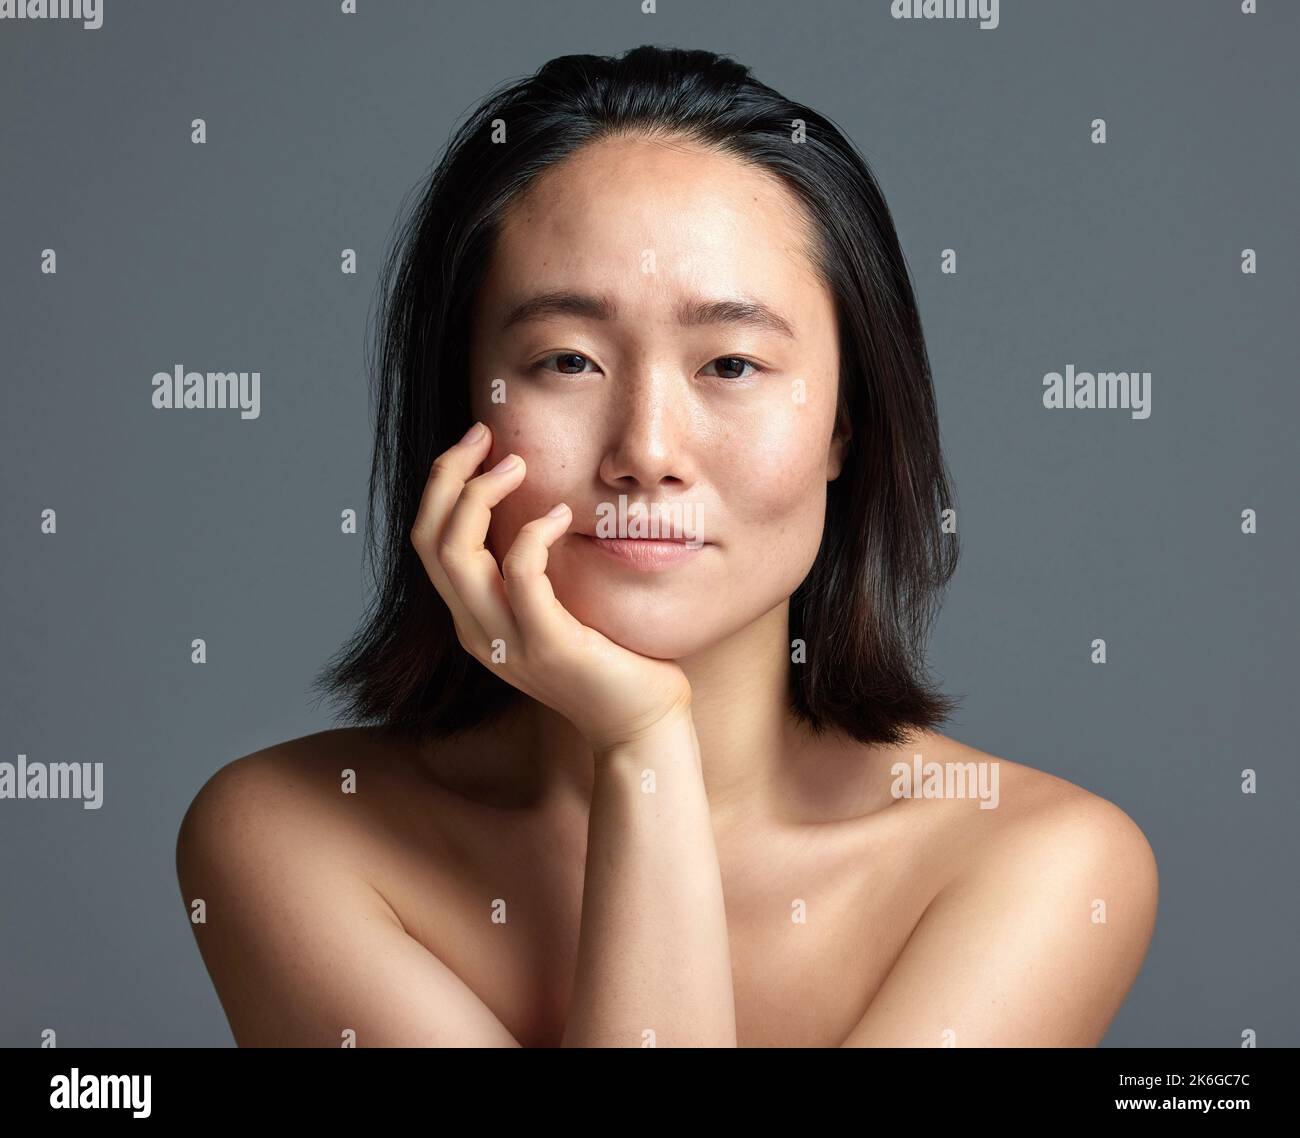 Ihre Haut sagt alles. Studioaufnahme einer schönen jungen Frau, die vor einem grauen Hintergrund posiert. Stockfoto